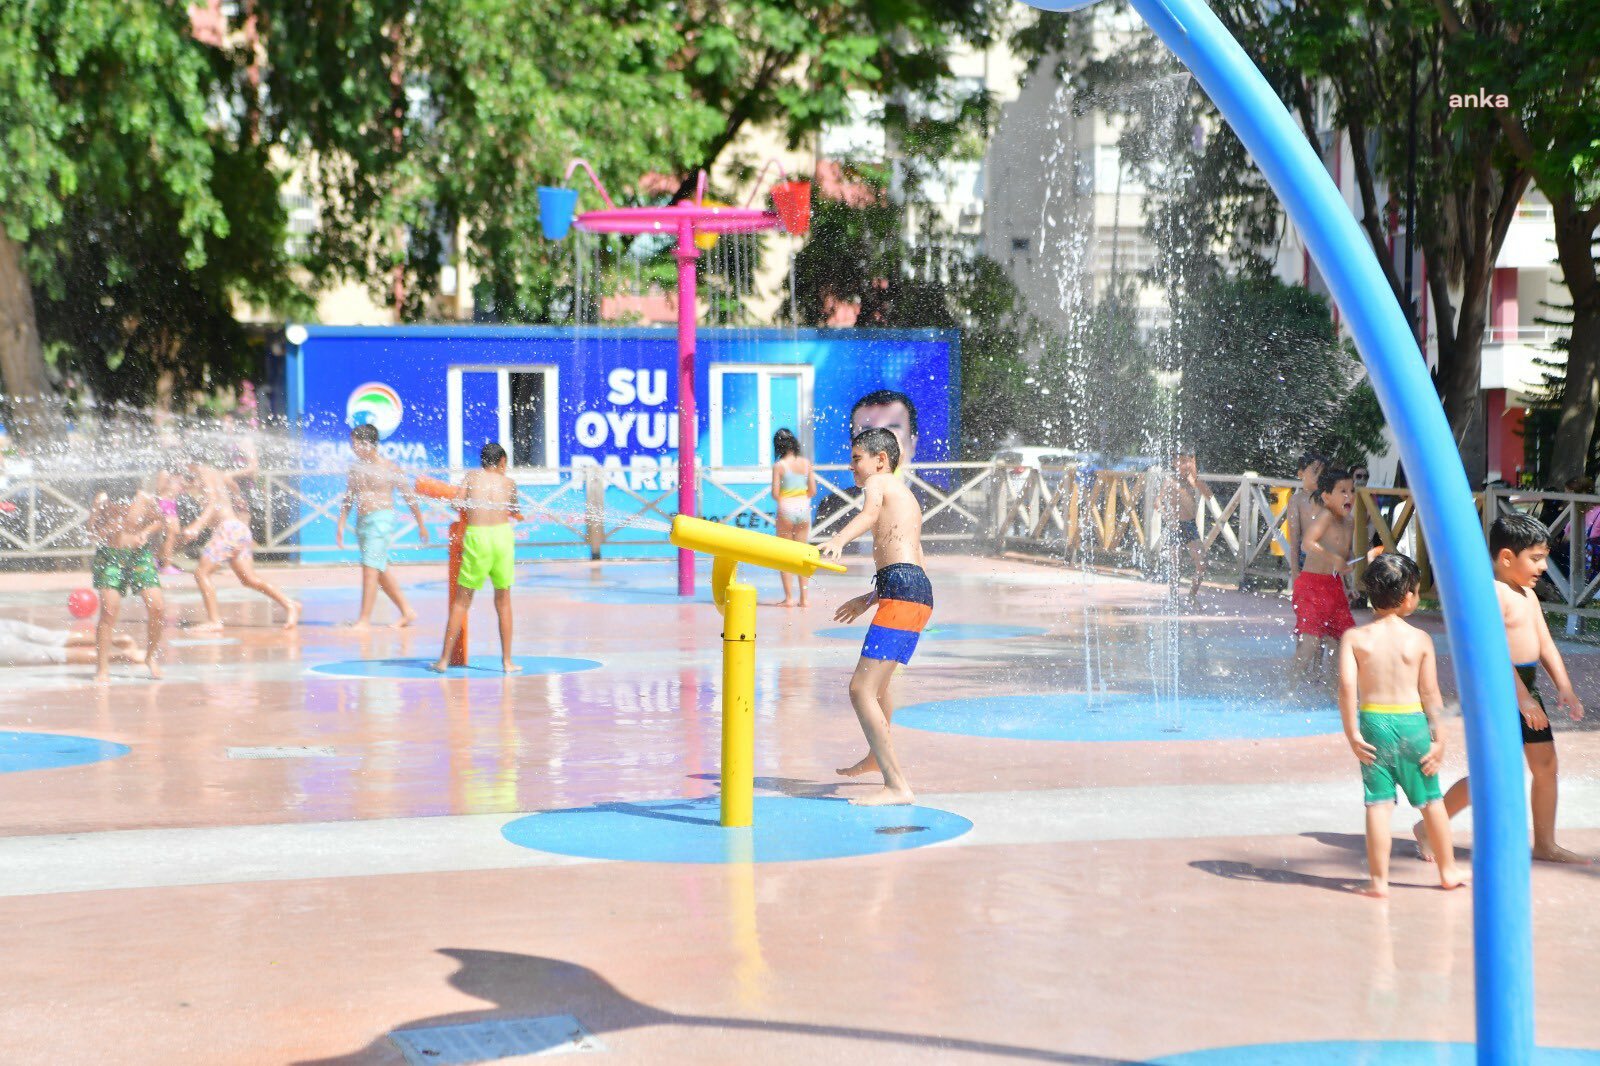 Adana'da çocuklar için su oyun parkları: 'Tatile gidemeyen çocuklar için'